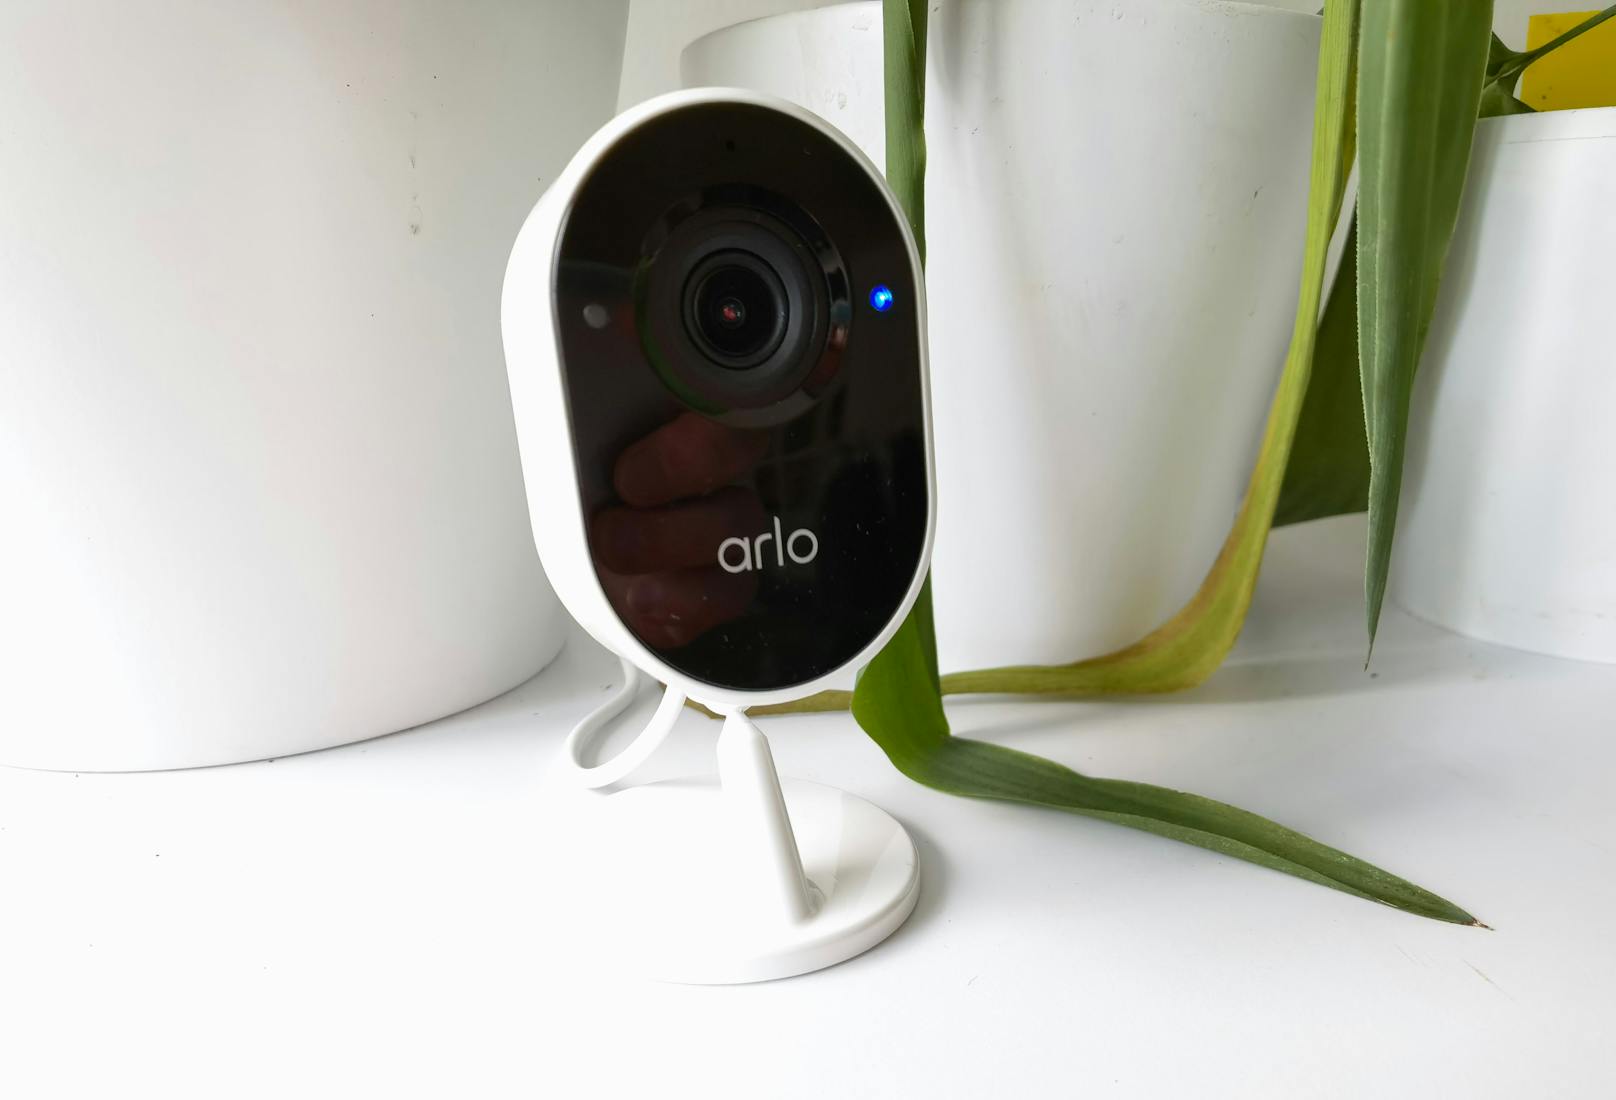 Um mit der Sorge aufzuräumen, dass die Kamera auch allerhand filmen könnte, das privat bleiben soll, hat Arlo die neue Essential Indoor Camera vorgestellt. Neu ist das von Arlo so genannte Camera Privacy Shield.